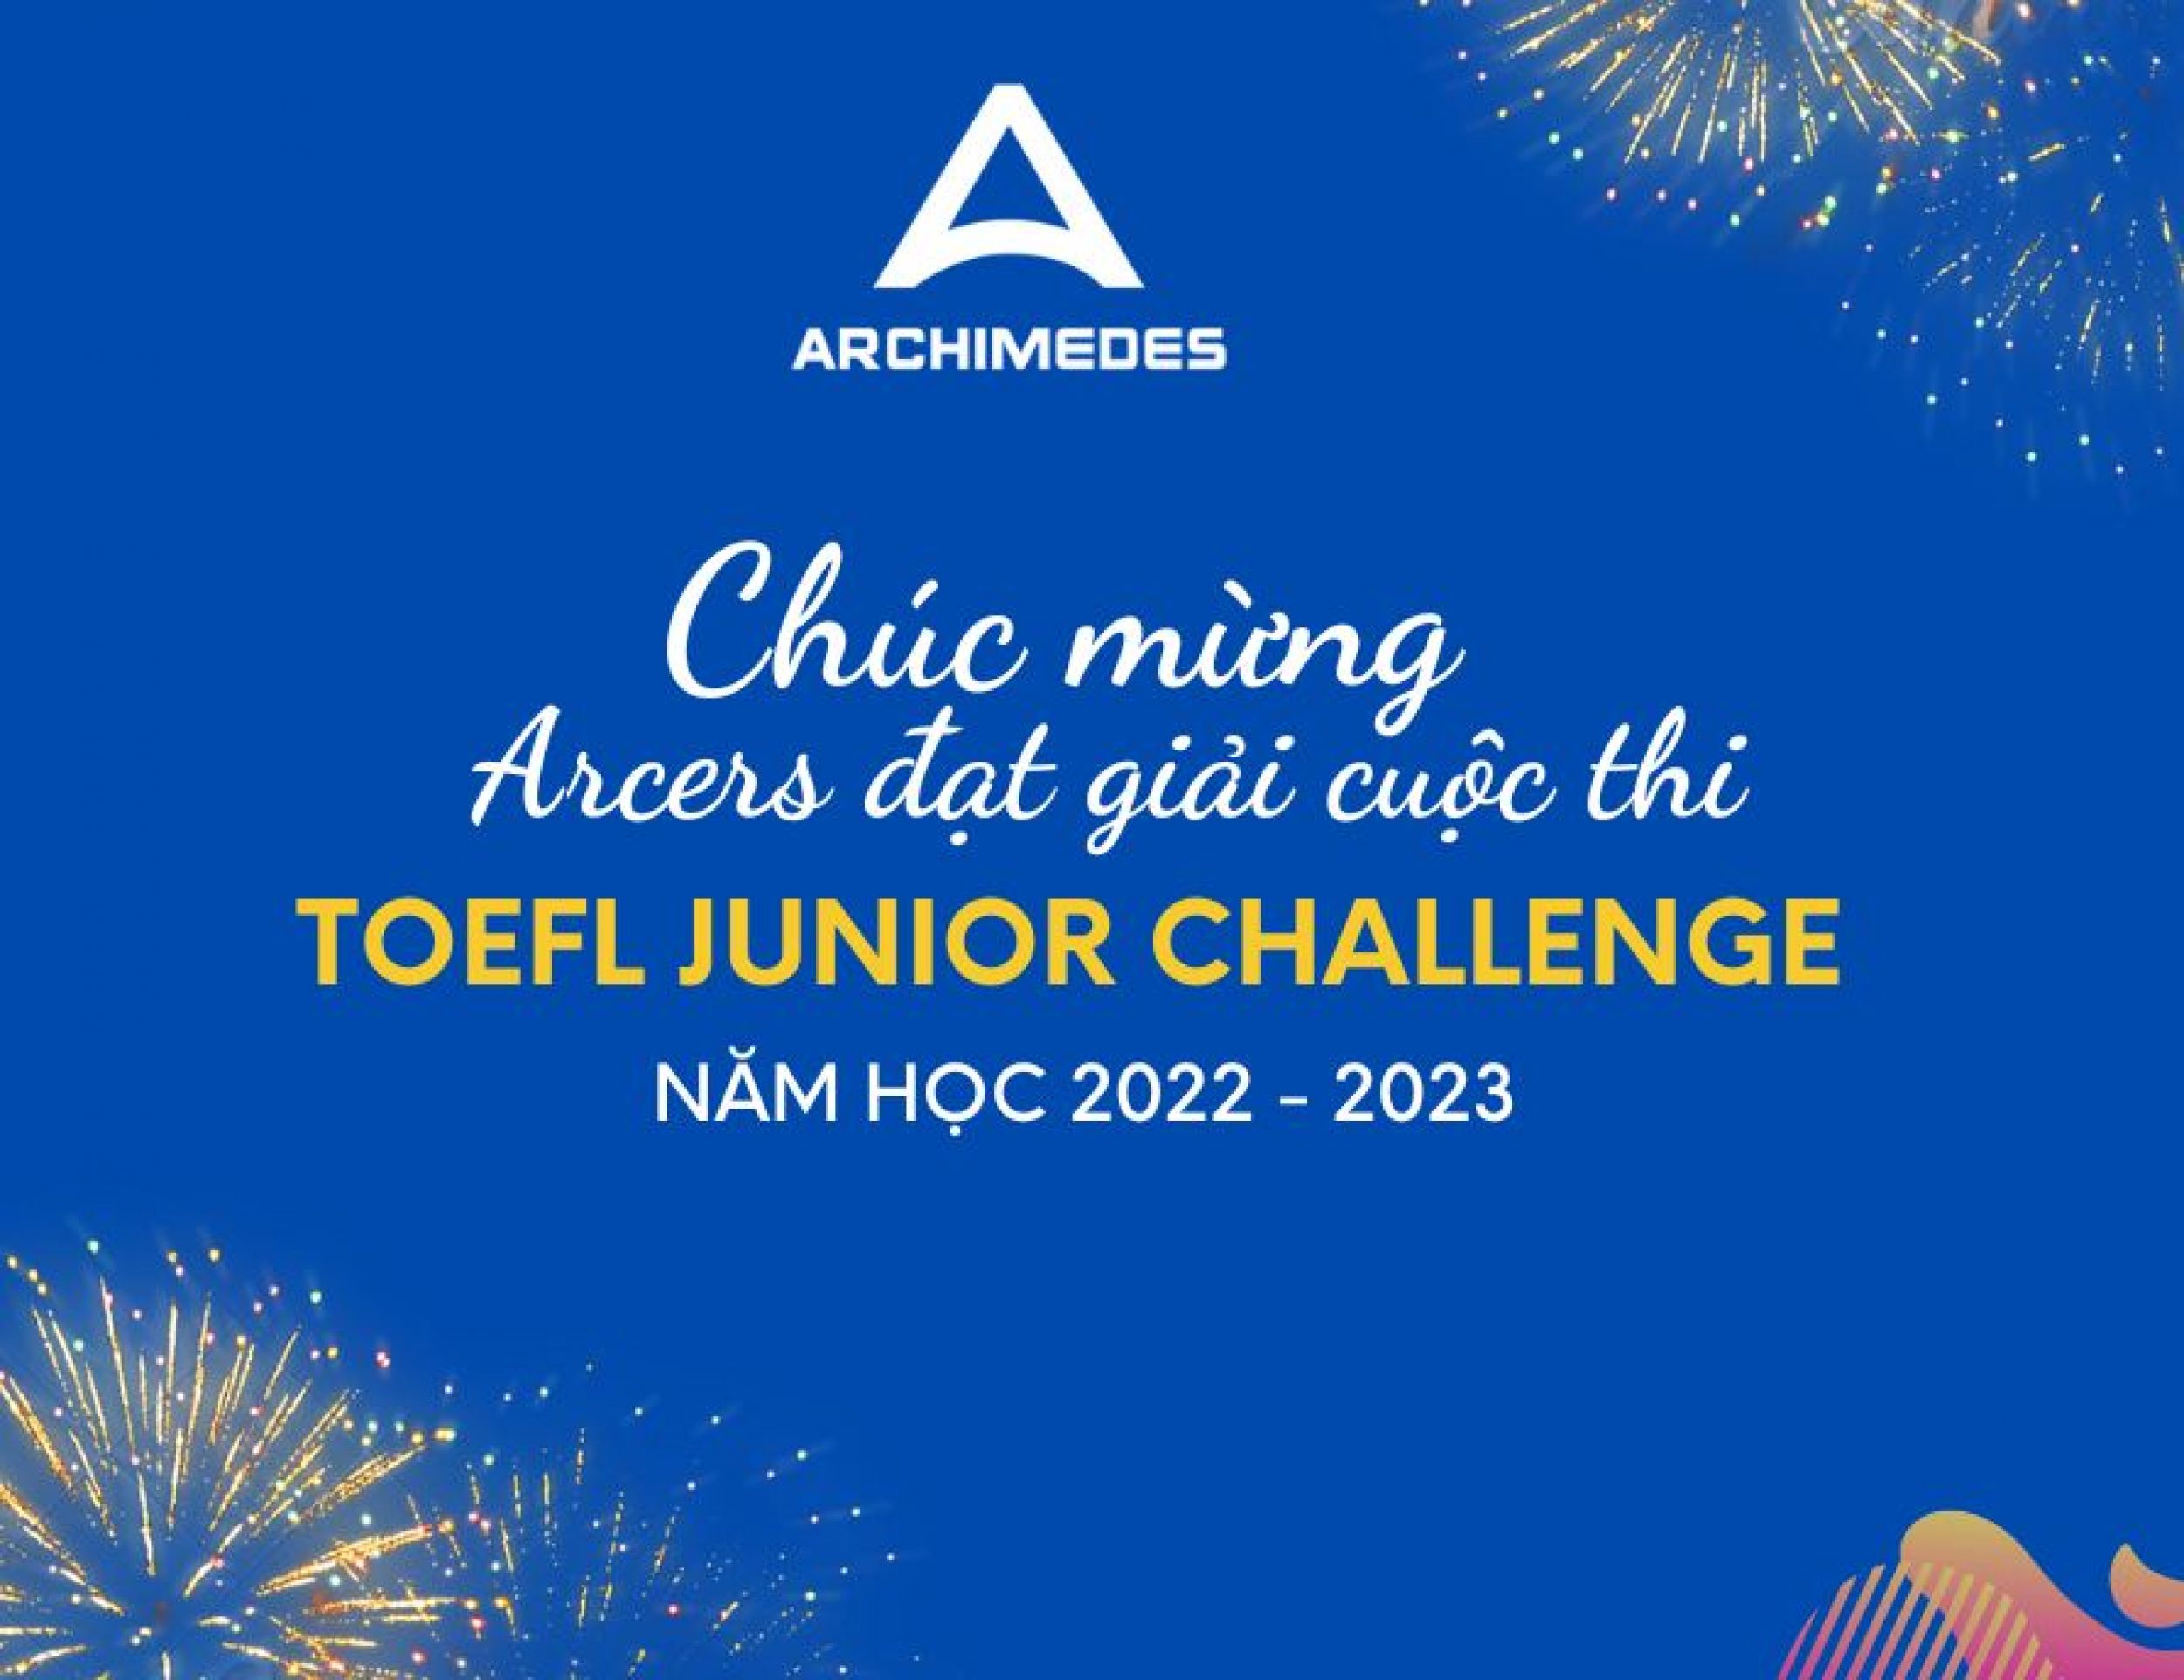 Chúc mừng Arcers đạt giải tại cuộc thi Tiếng Anh Toefl Junior Challenge 2022 -2023 